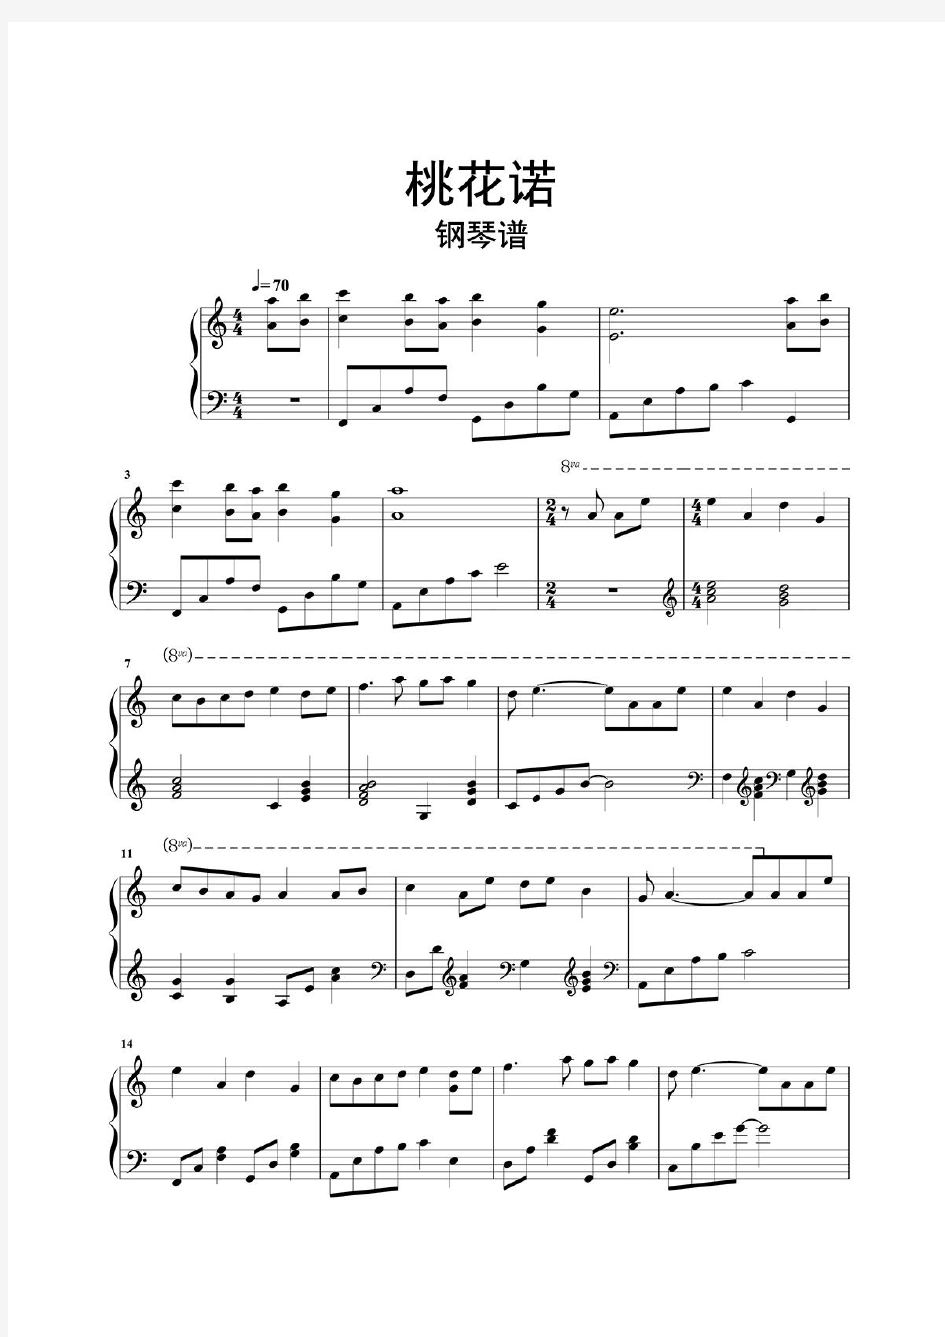 桃花诺钢琴谱乐谱